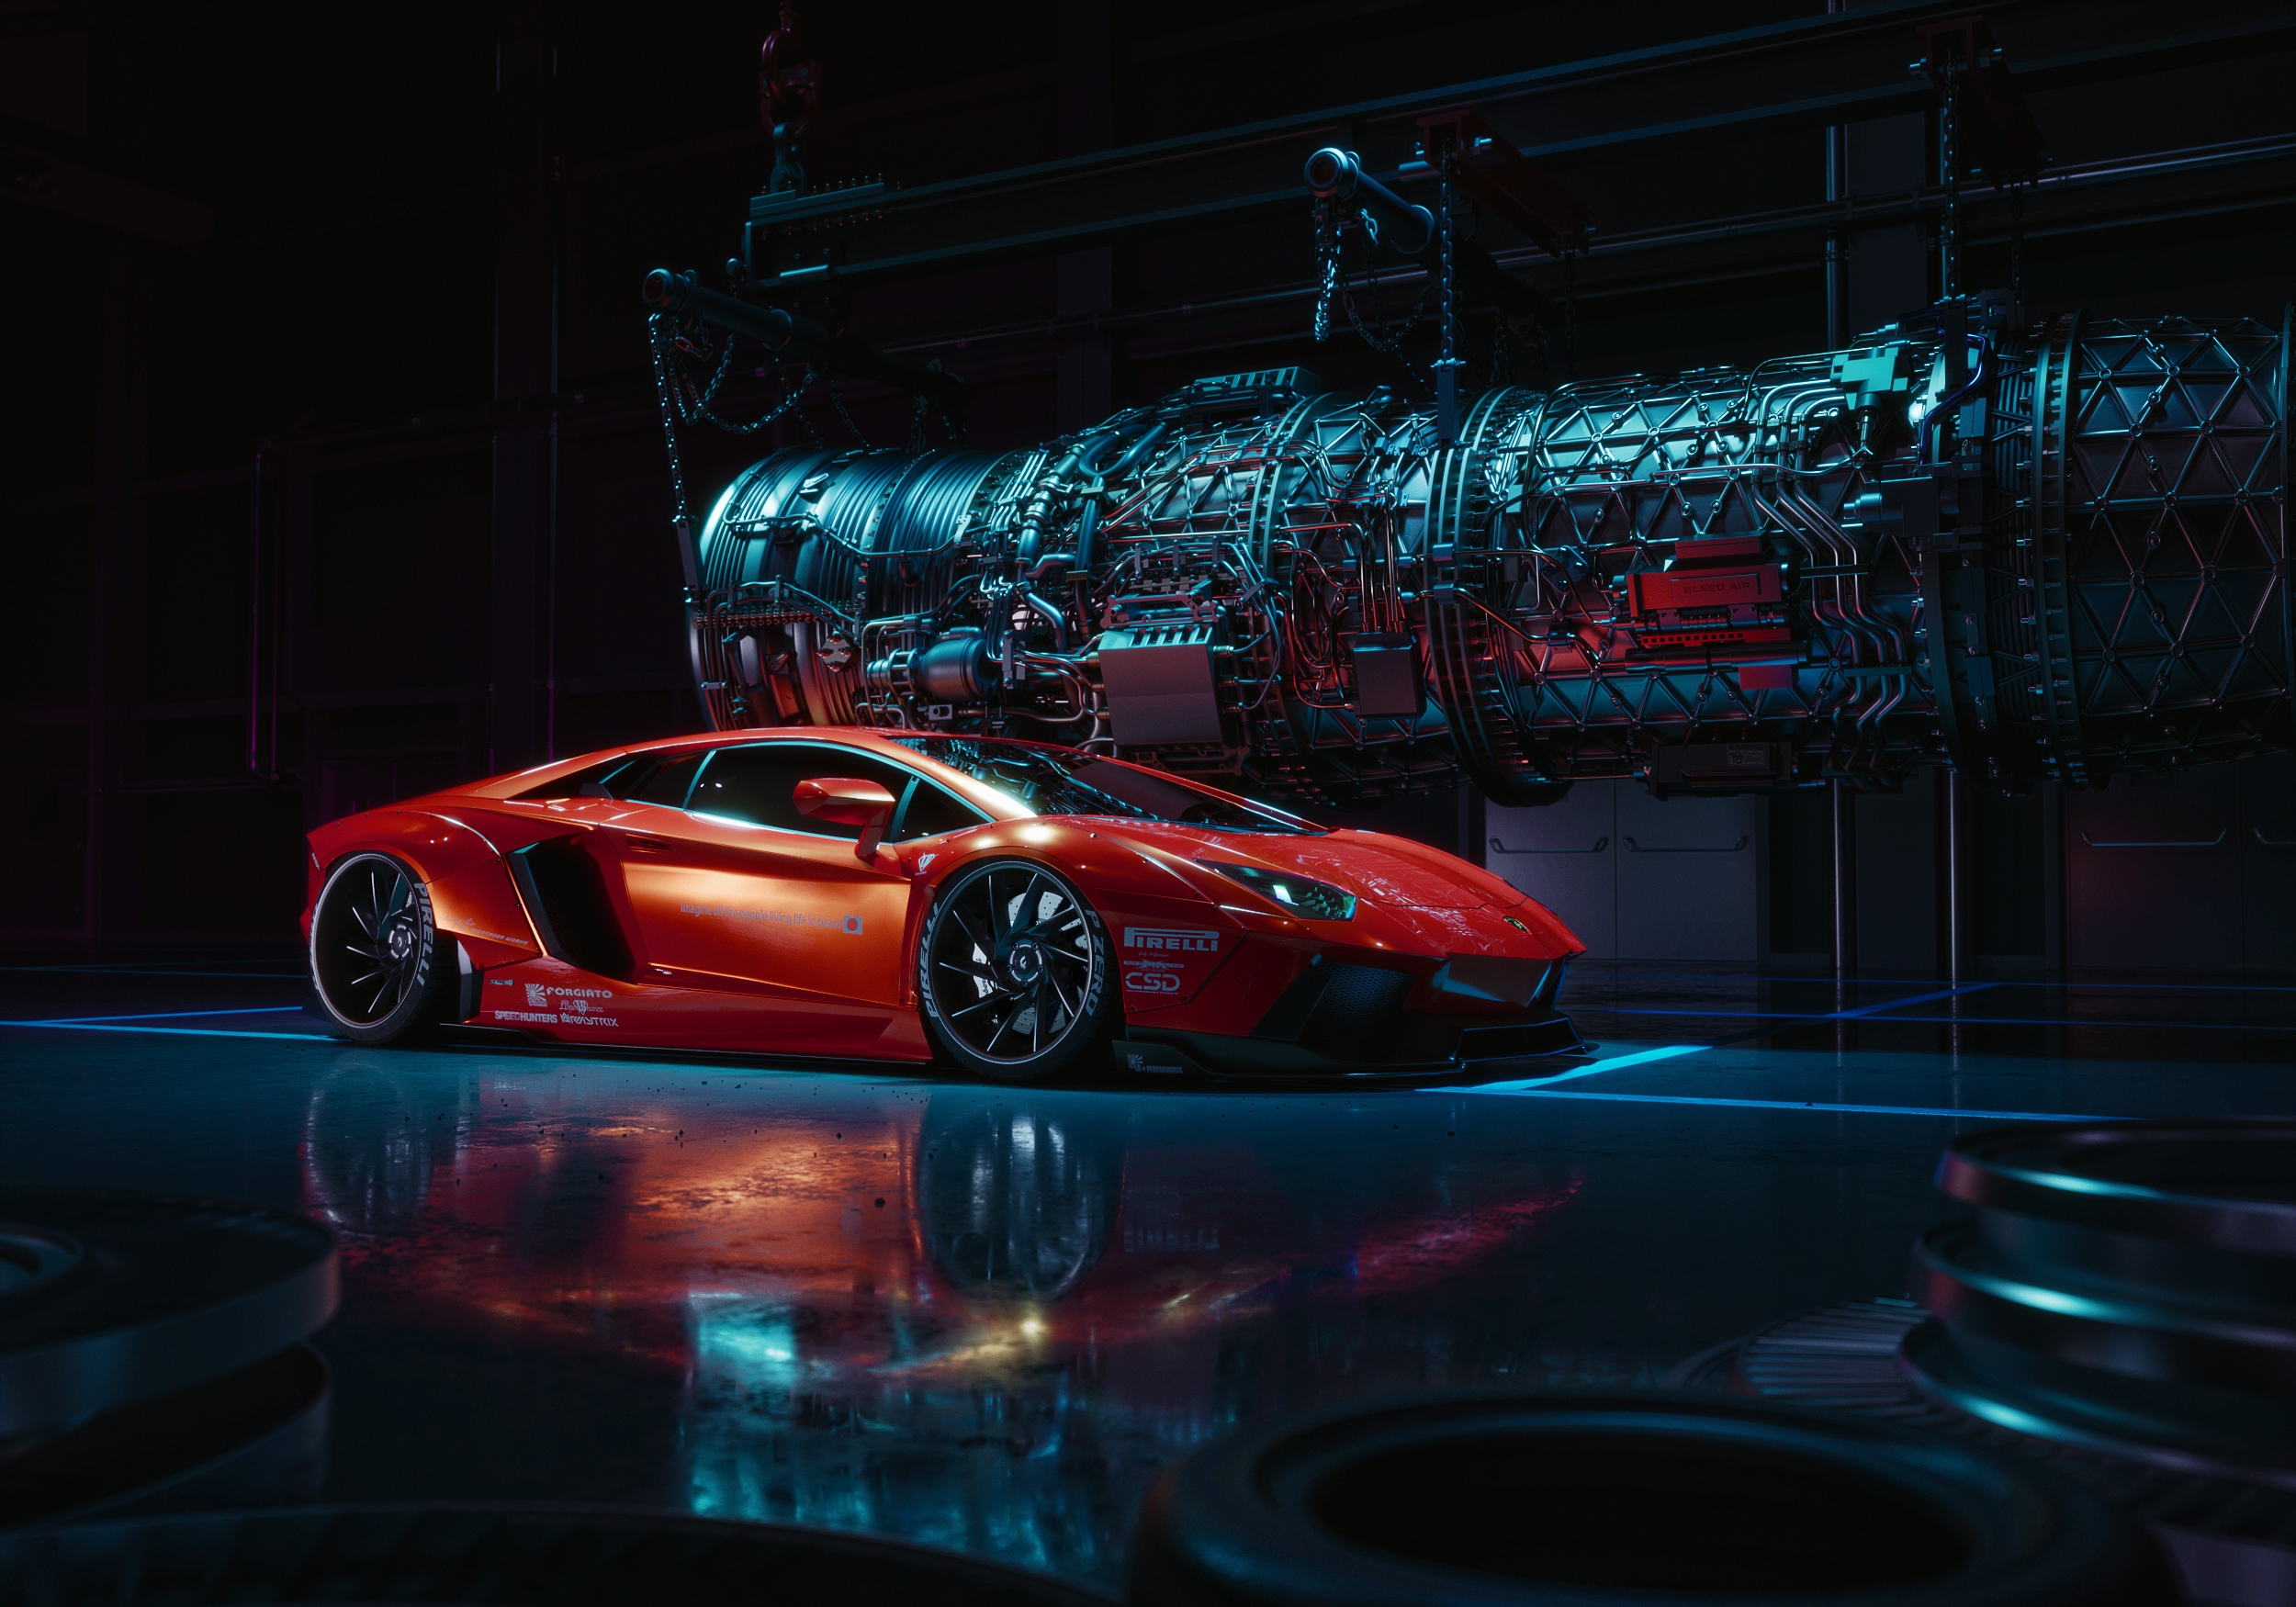 免费照片在黑暗的未来主义机库中的红色兰博基尼Aventador